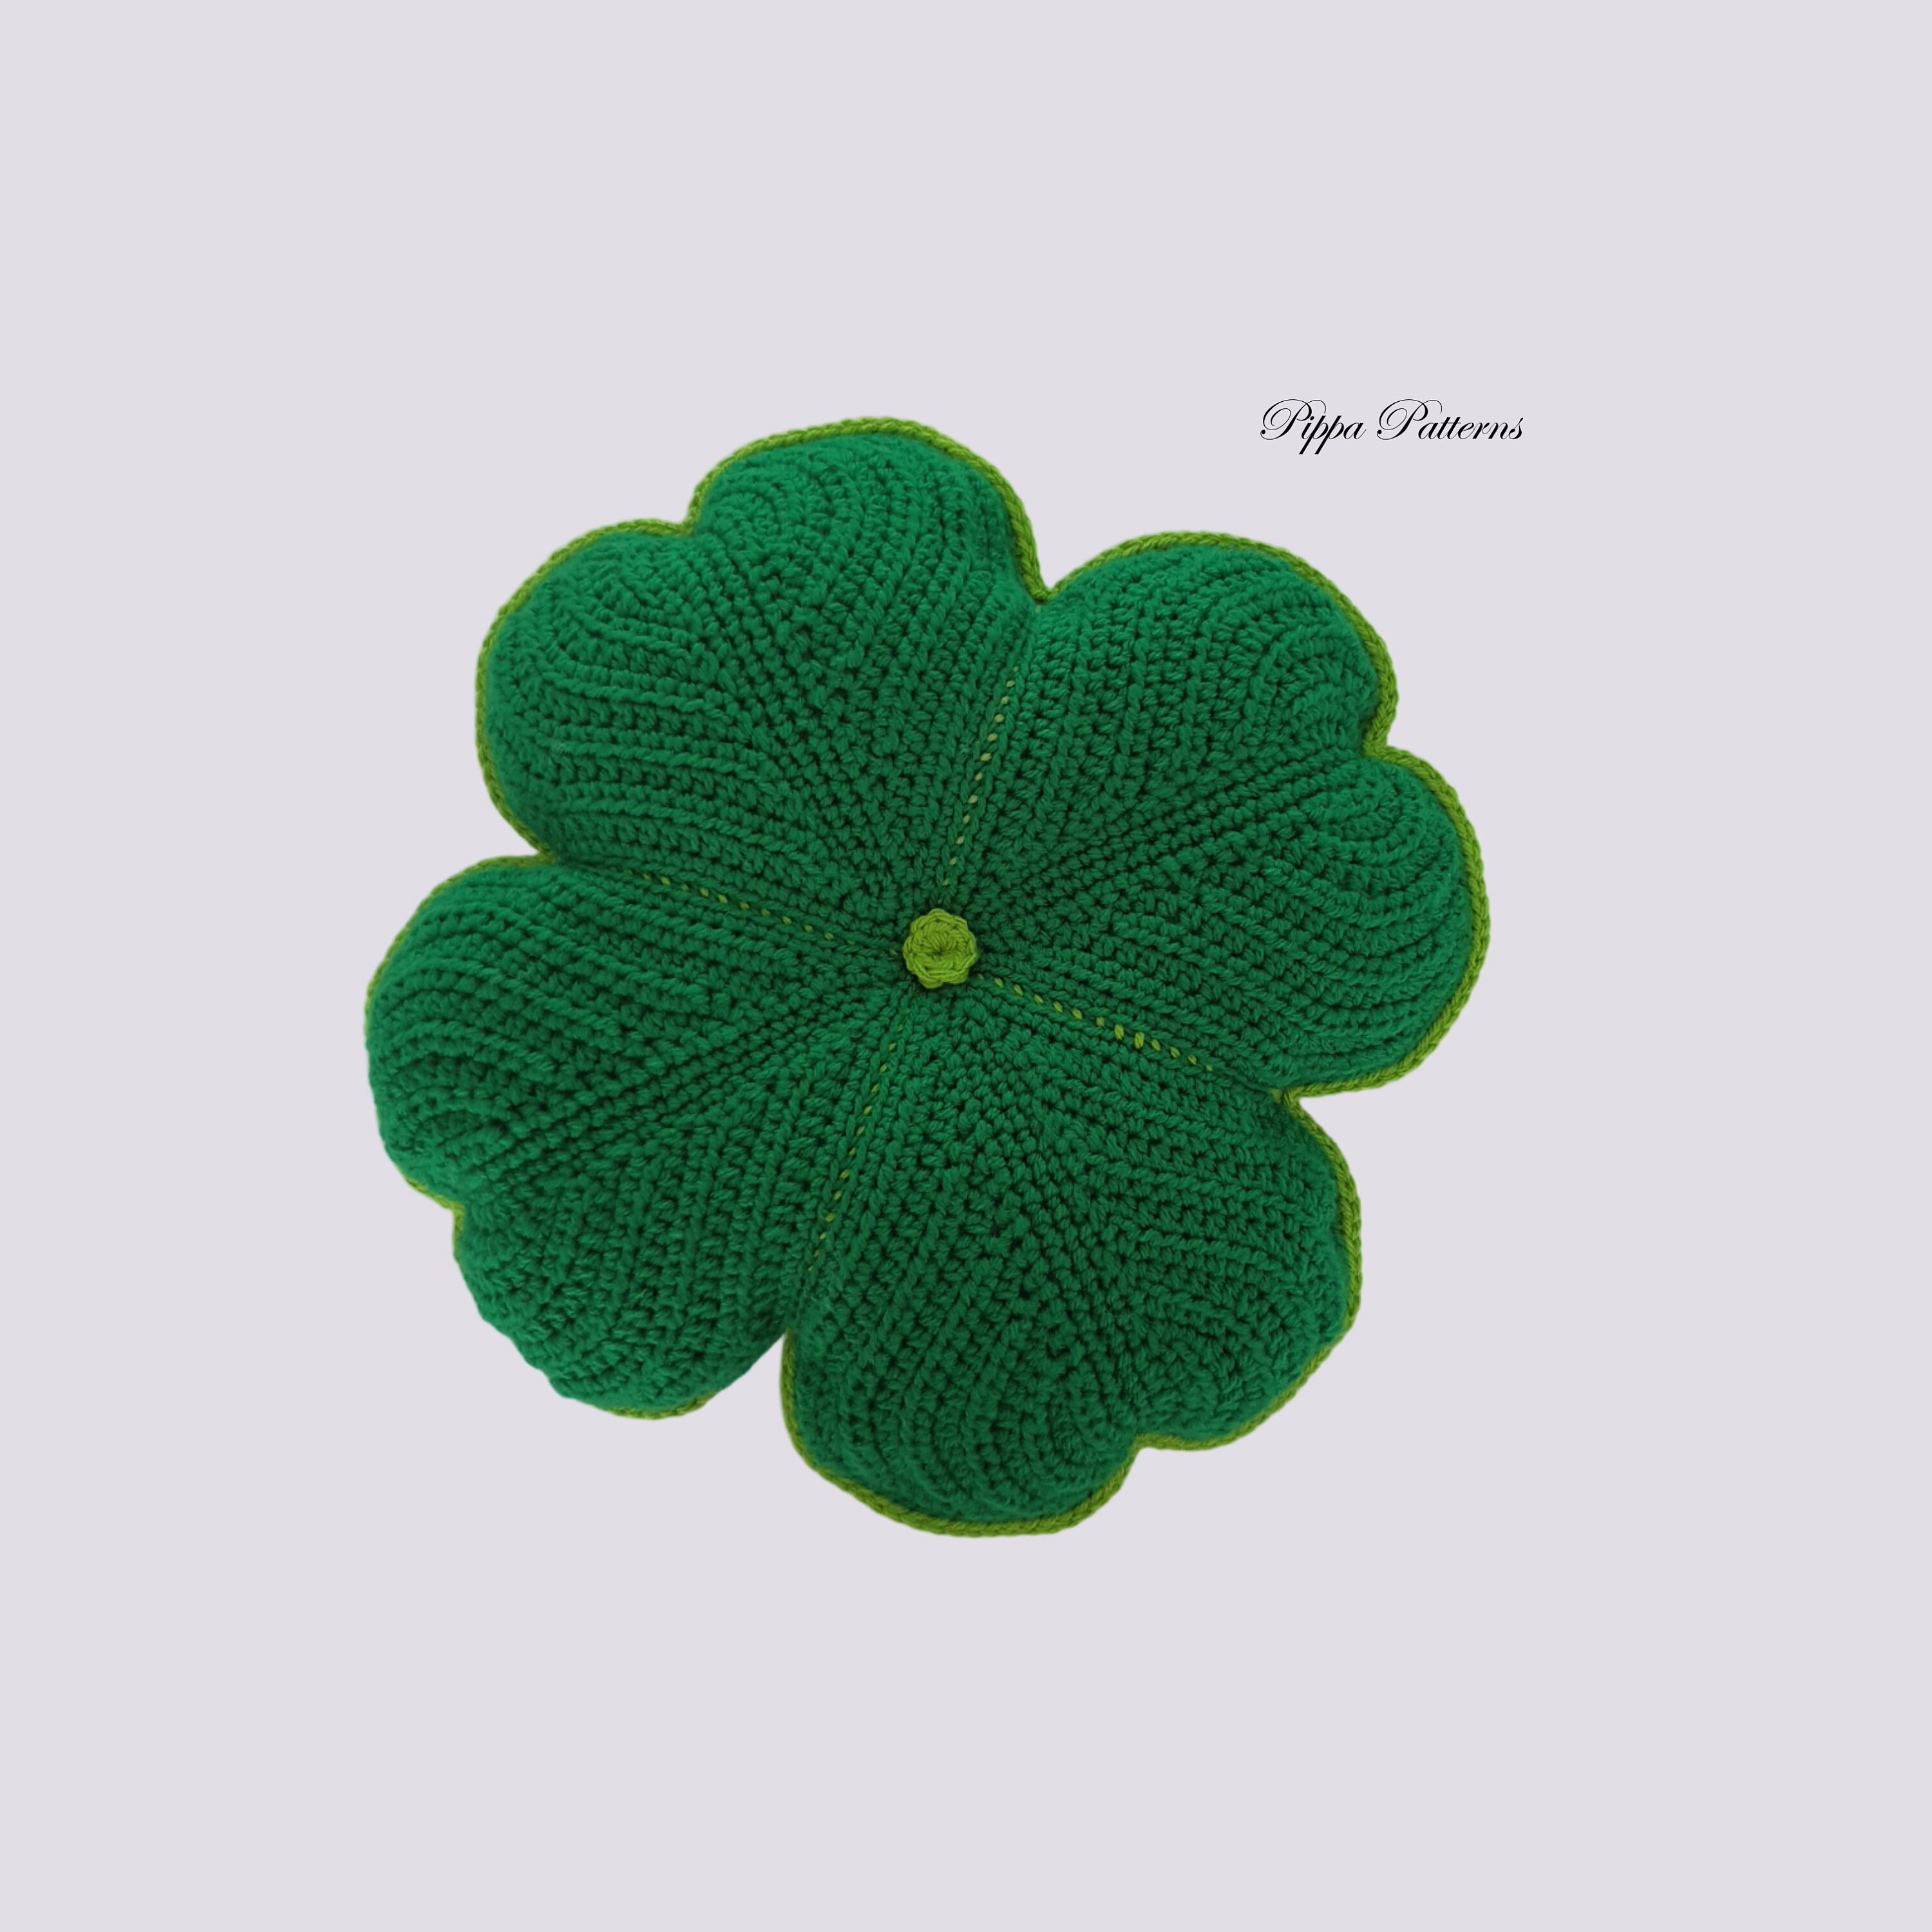 Crochet Spot » Blog Archive » Crochet Pattern: Four Leaf Clover - Crochet  Patterns, Tutorials and News